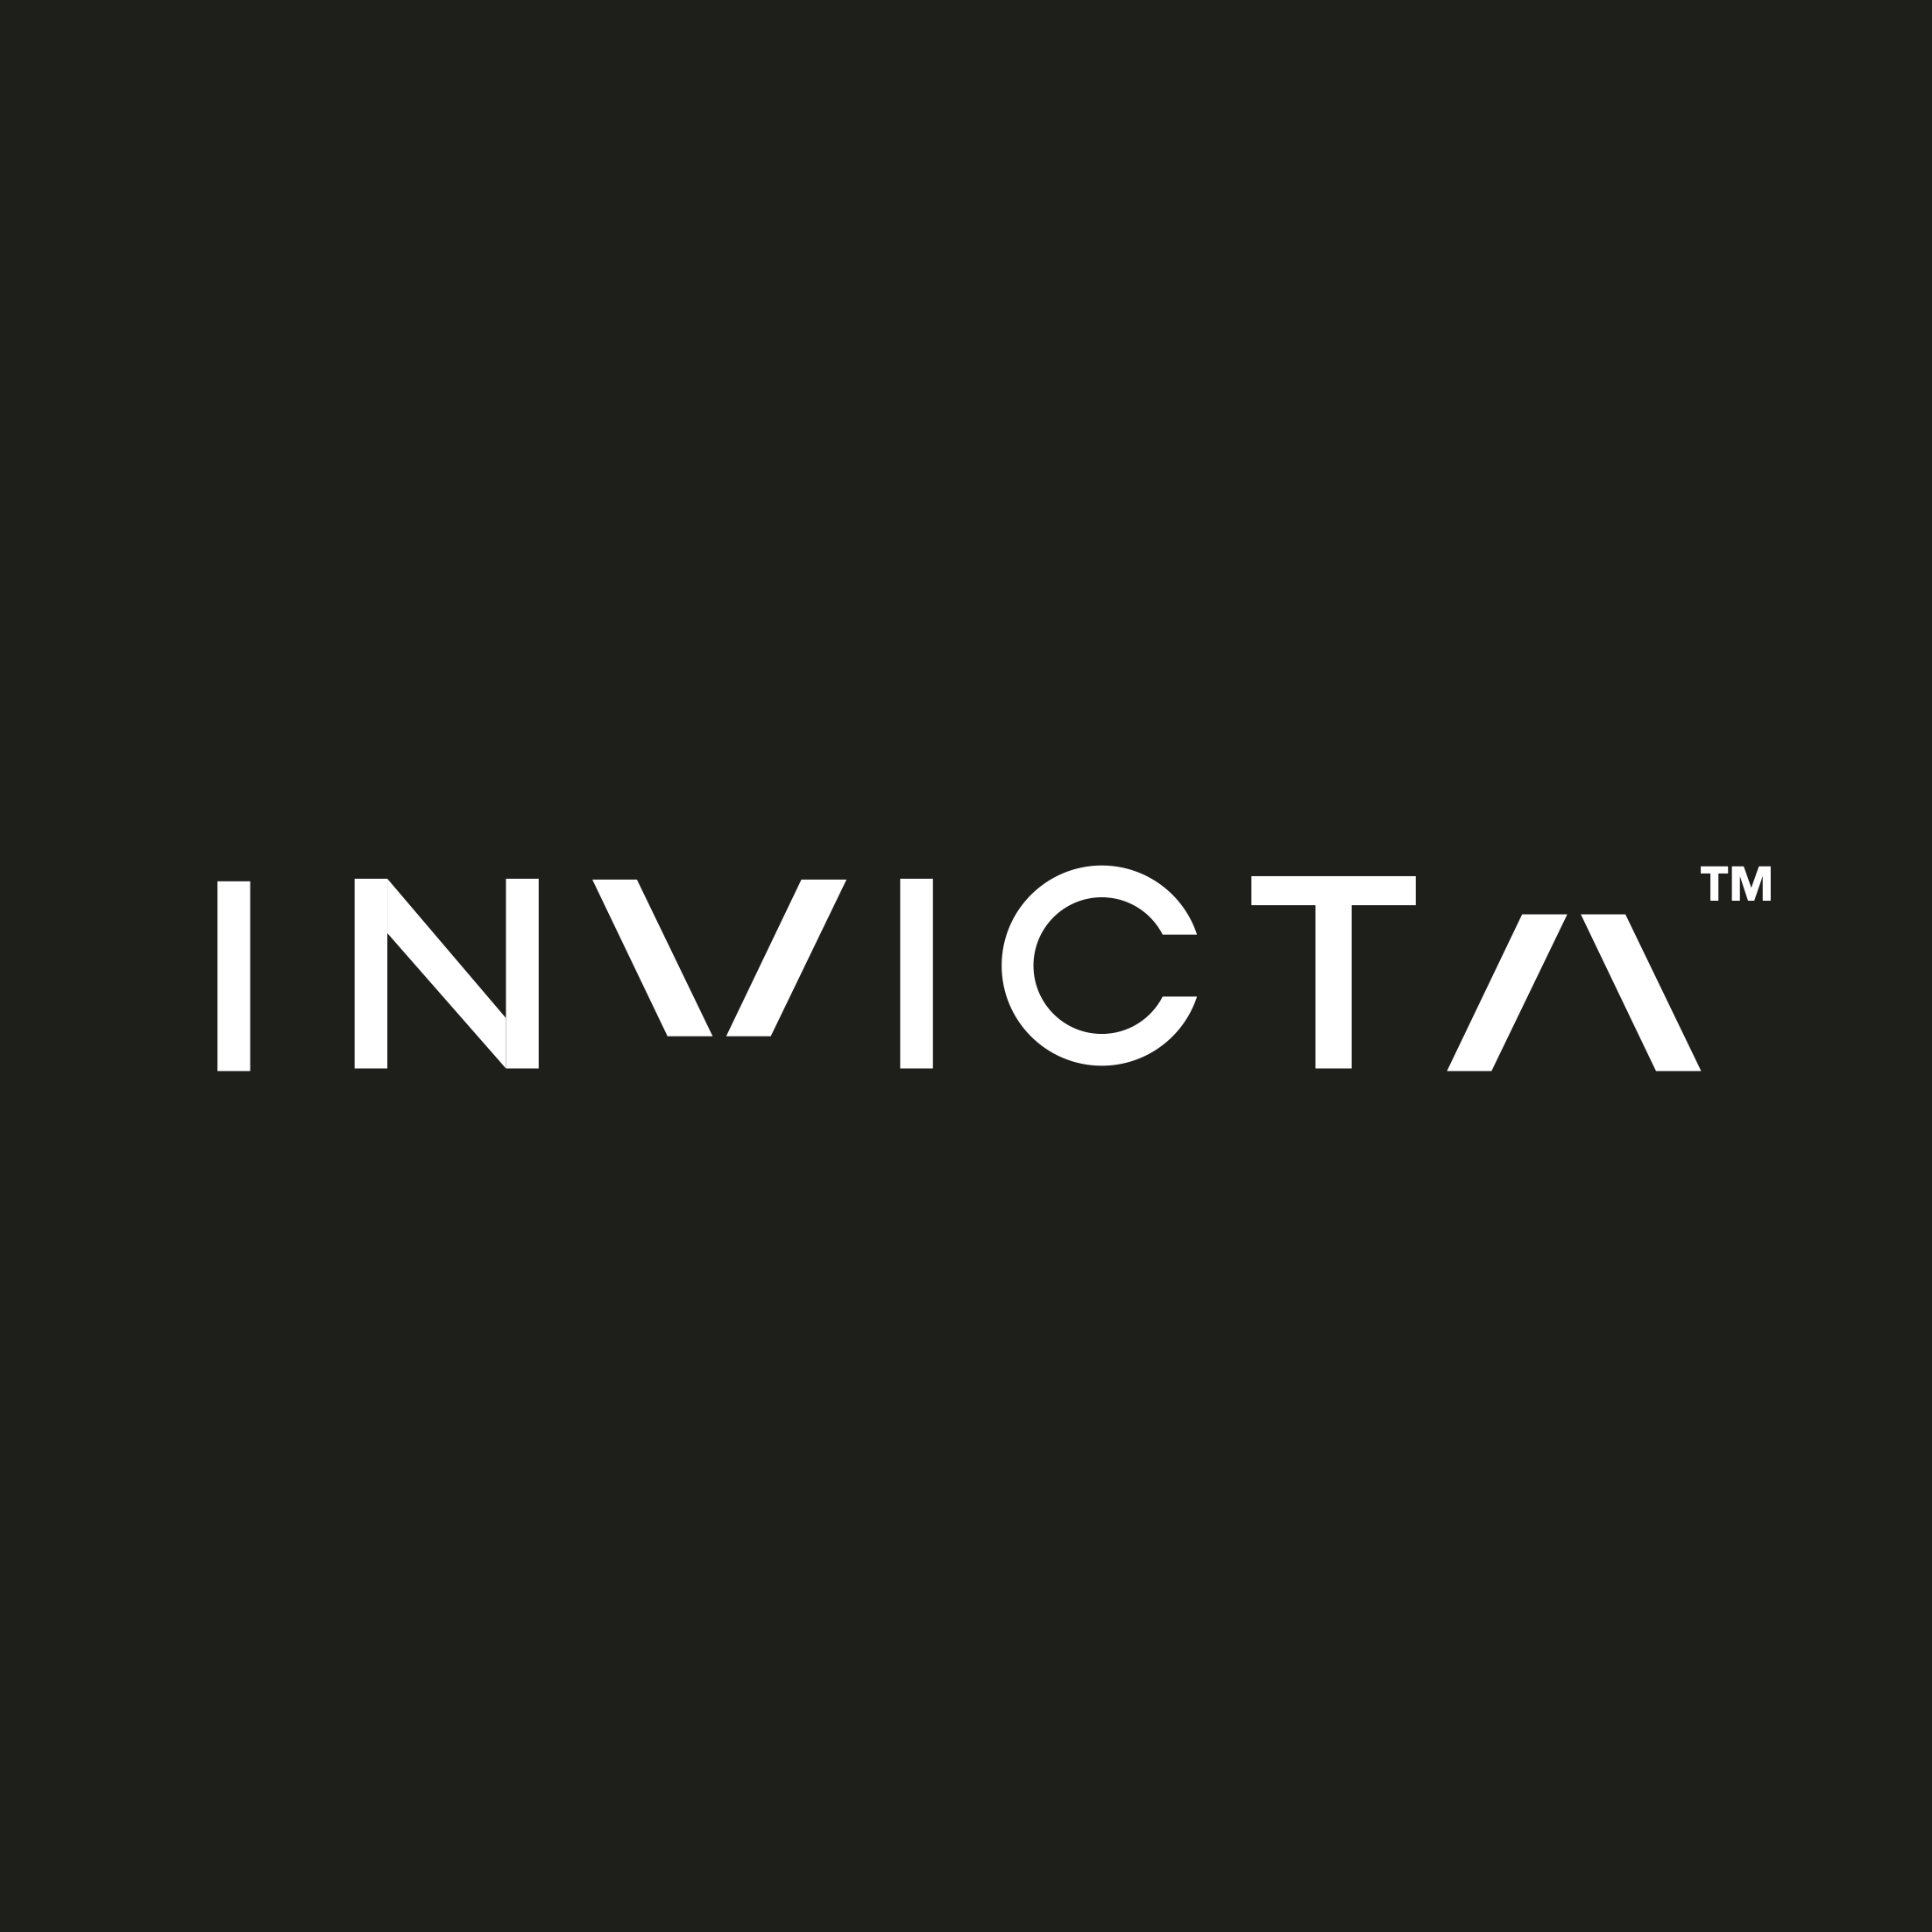 Invicta AI logo